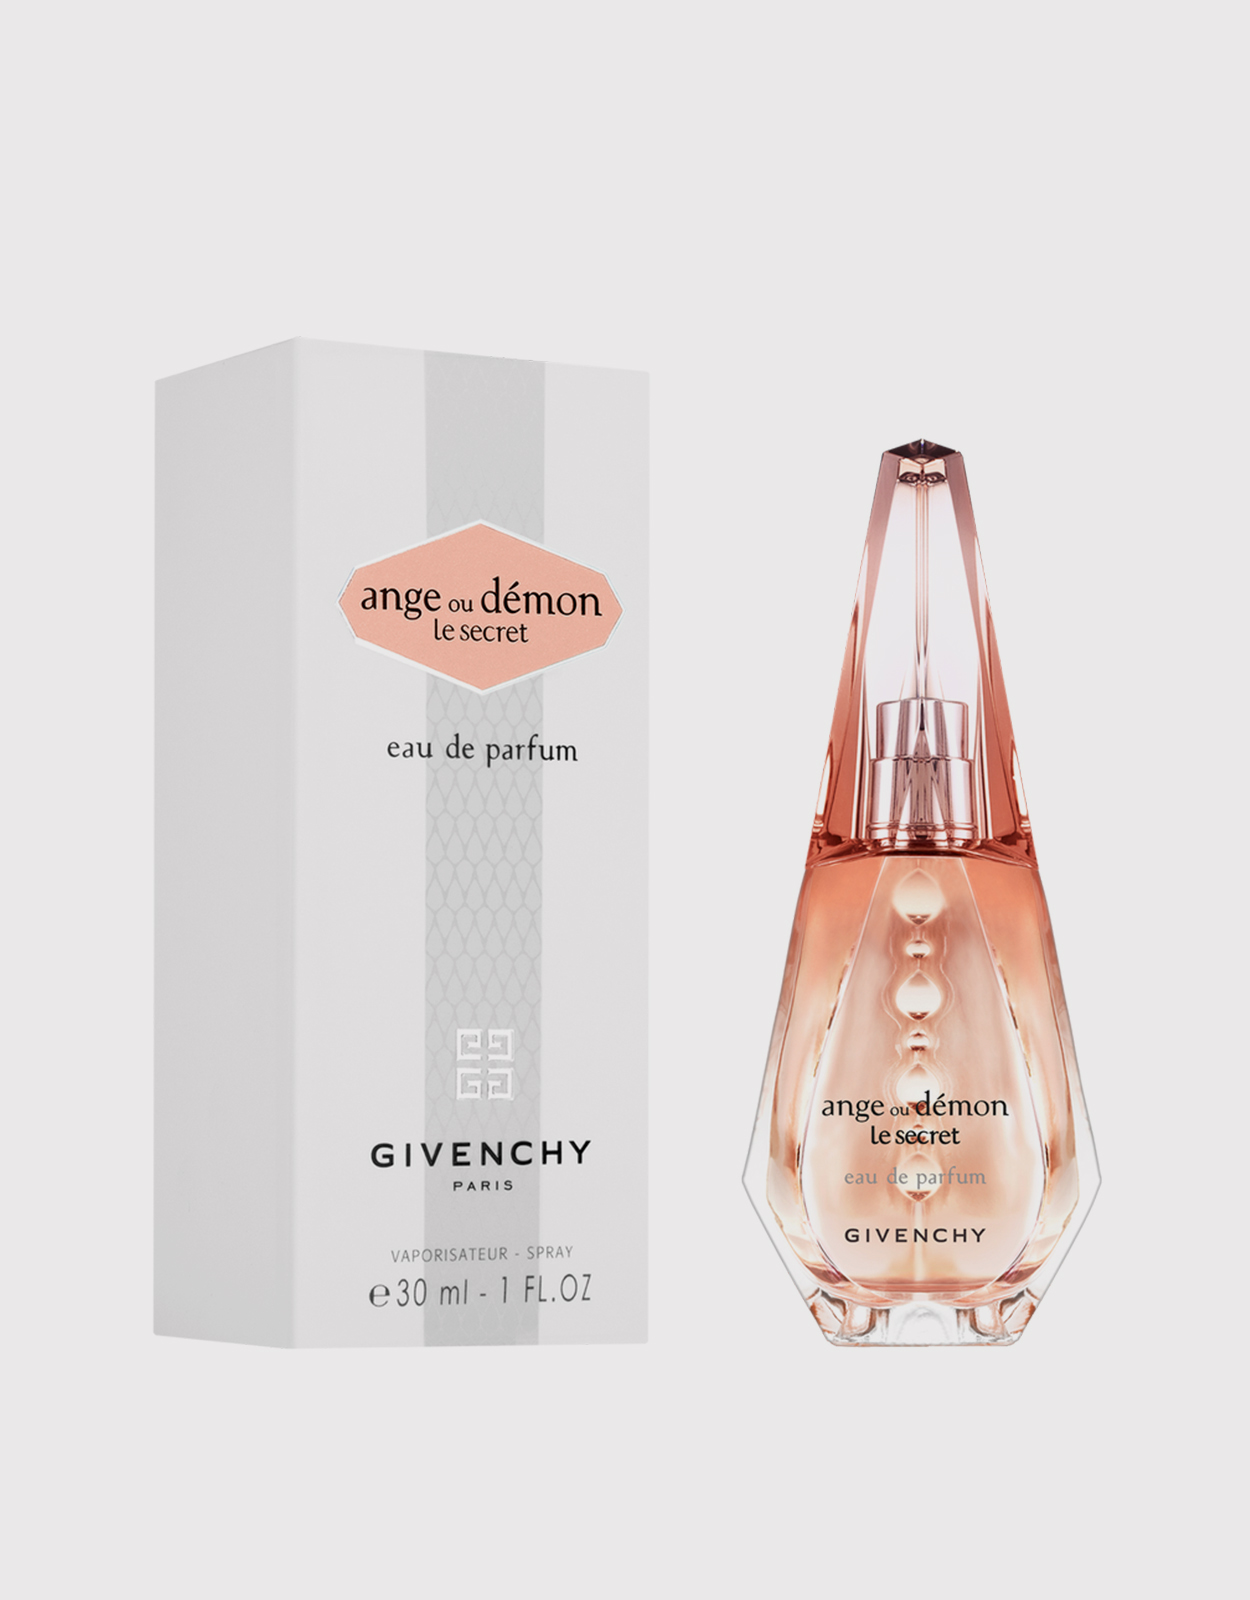 Givenchy Beauty Ange Demon Le Secret For Women Eau De Parfum 30ml (Fragrance,Women) IFCHIC.COM